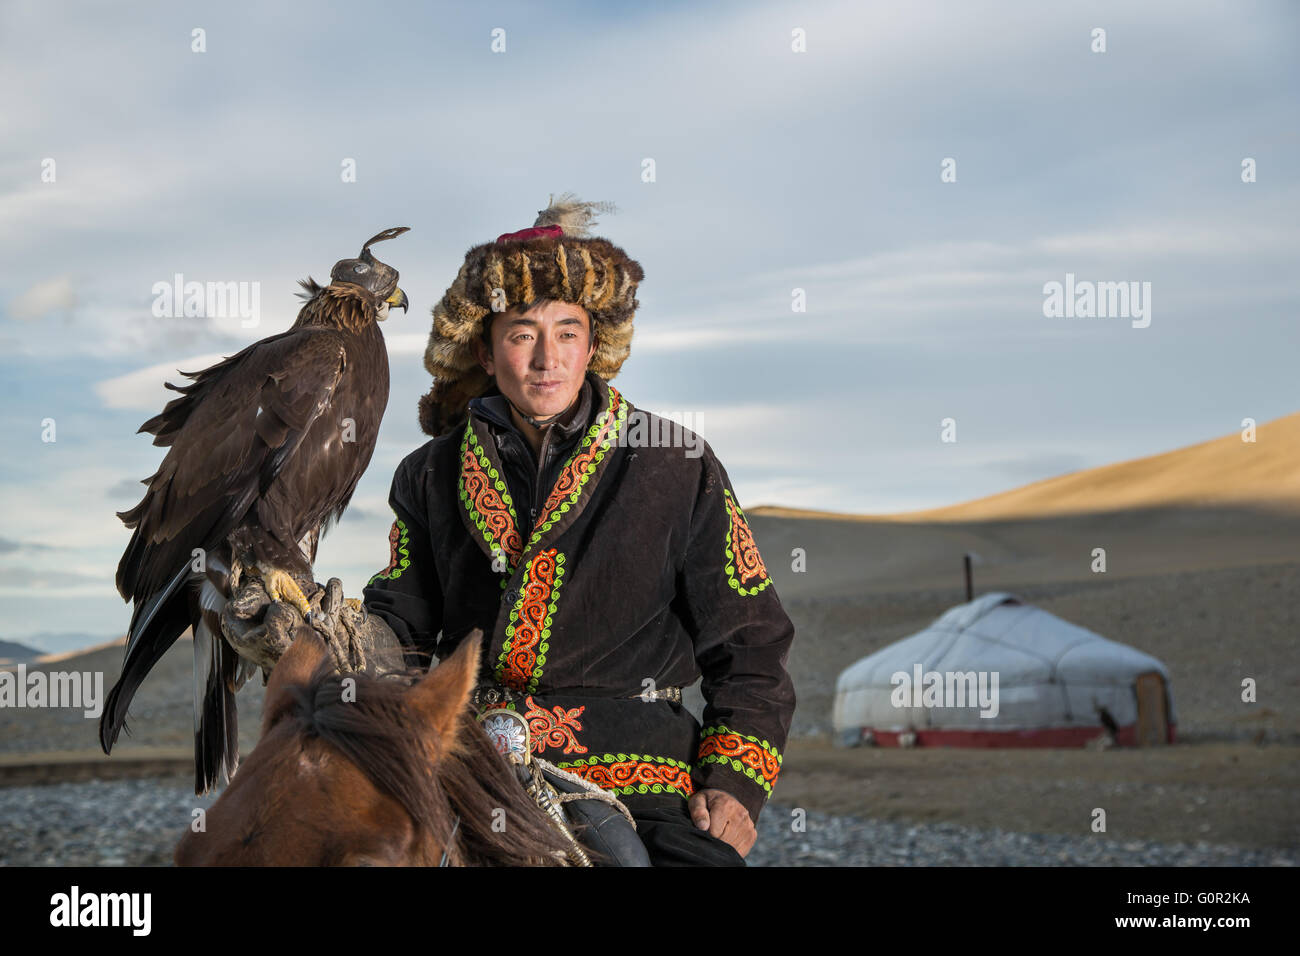 L'homme en costume traditionnel, sur un cheval, tenant un aigle doré sur son bras Banque D'Images